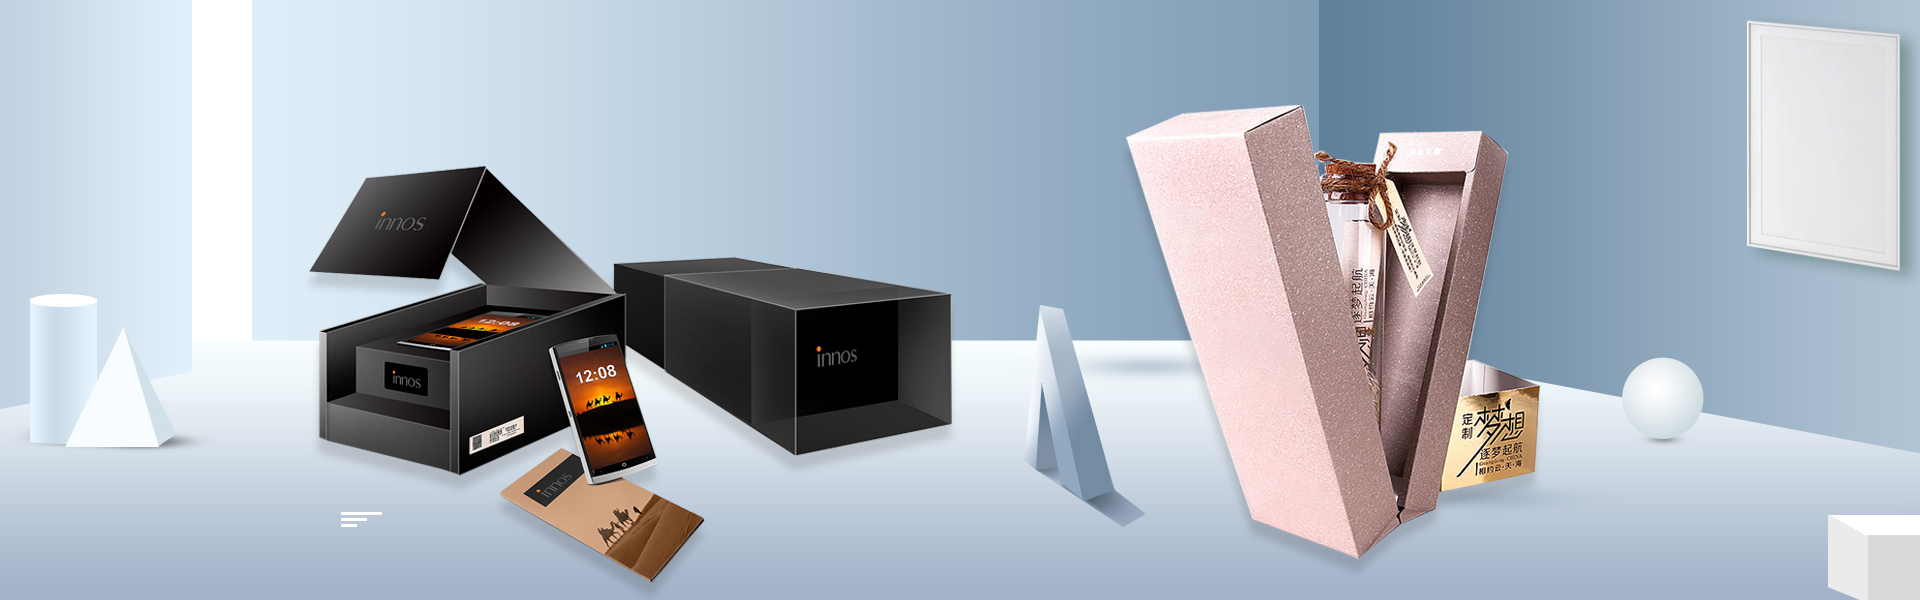 Egyedi doboz, ajándékdoboz, szépség doboz,Beifan Packaging Co., Ltd.